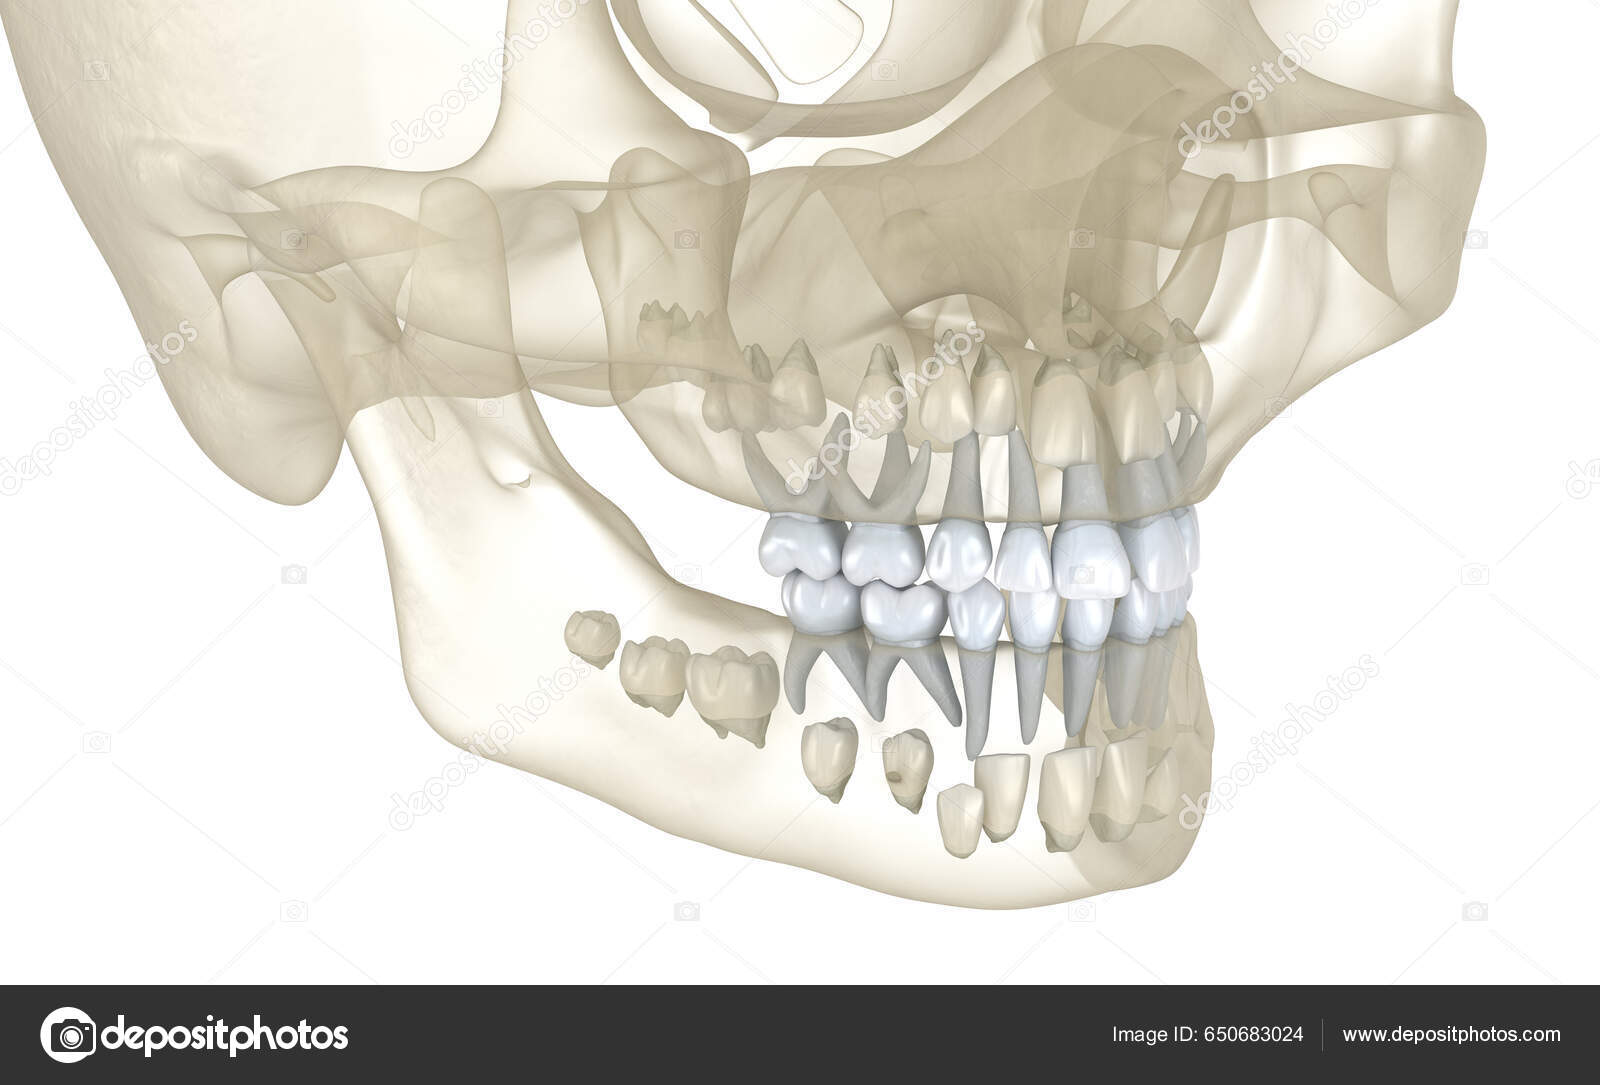 Dentition primaire : les dents de bébé